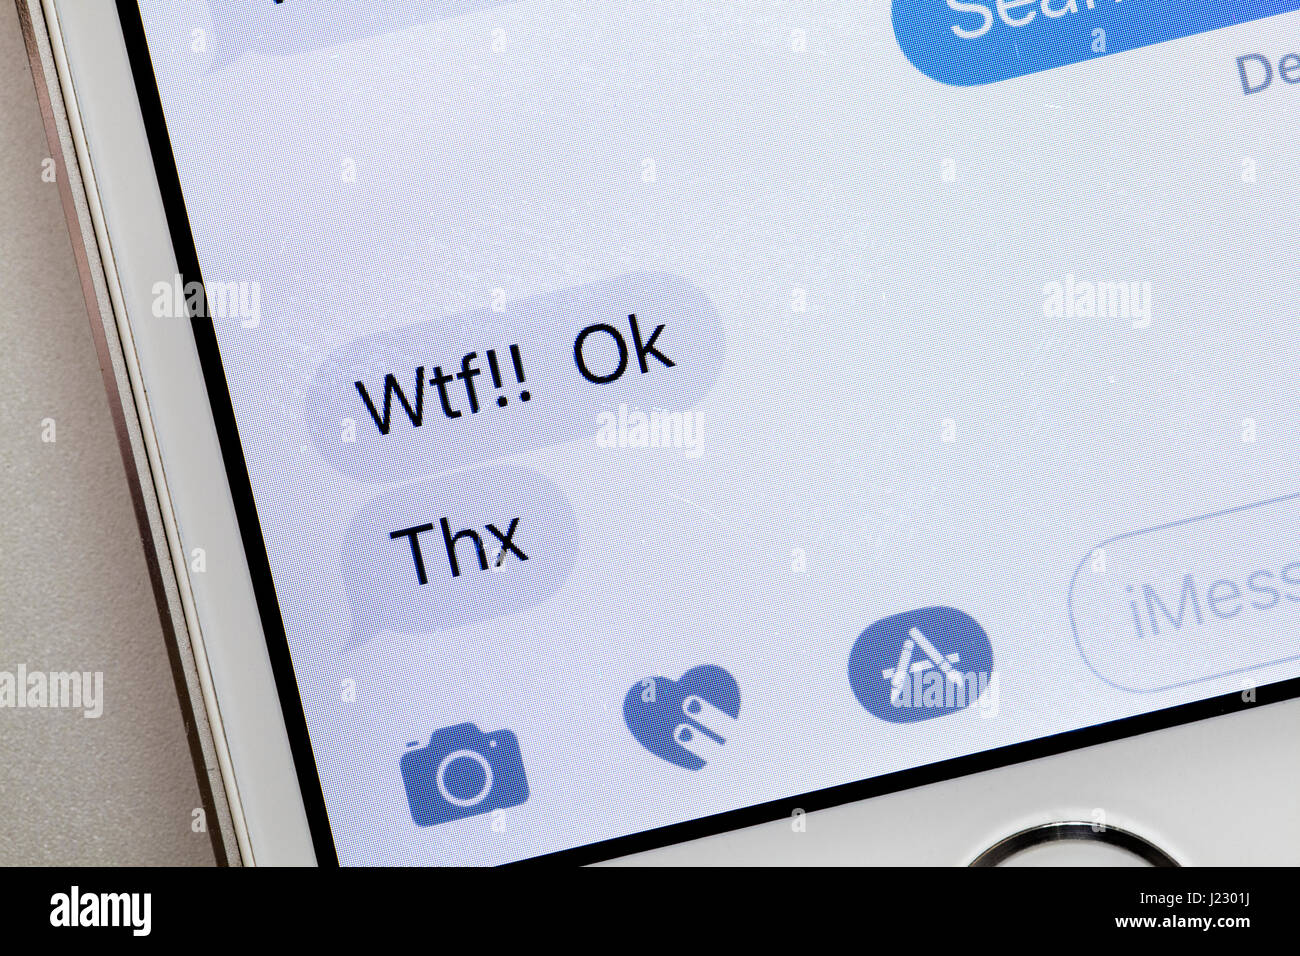 Mensaje de texto en la pantalla del iPhone (WTF texto, texto Thx) - EE.UU. Foto de stock